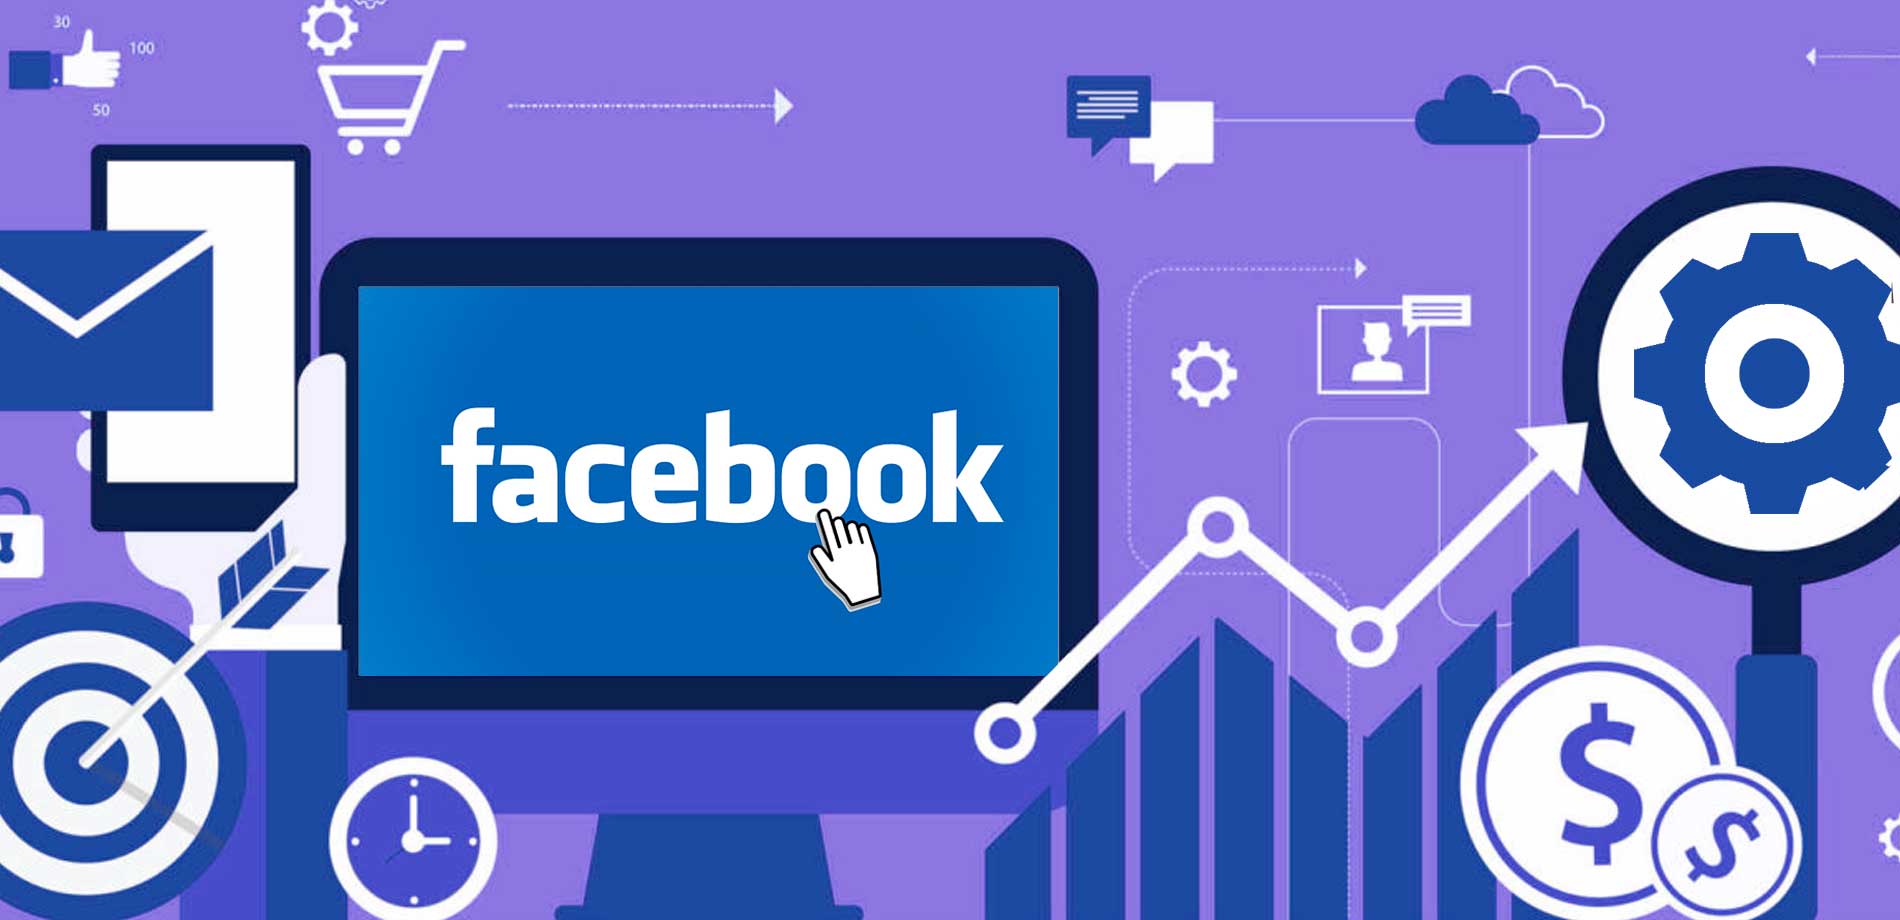 Marketing Digital B2B no Facebook: Por que apostar em estratégias para essa rede social?